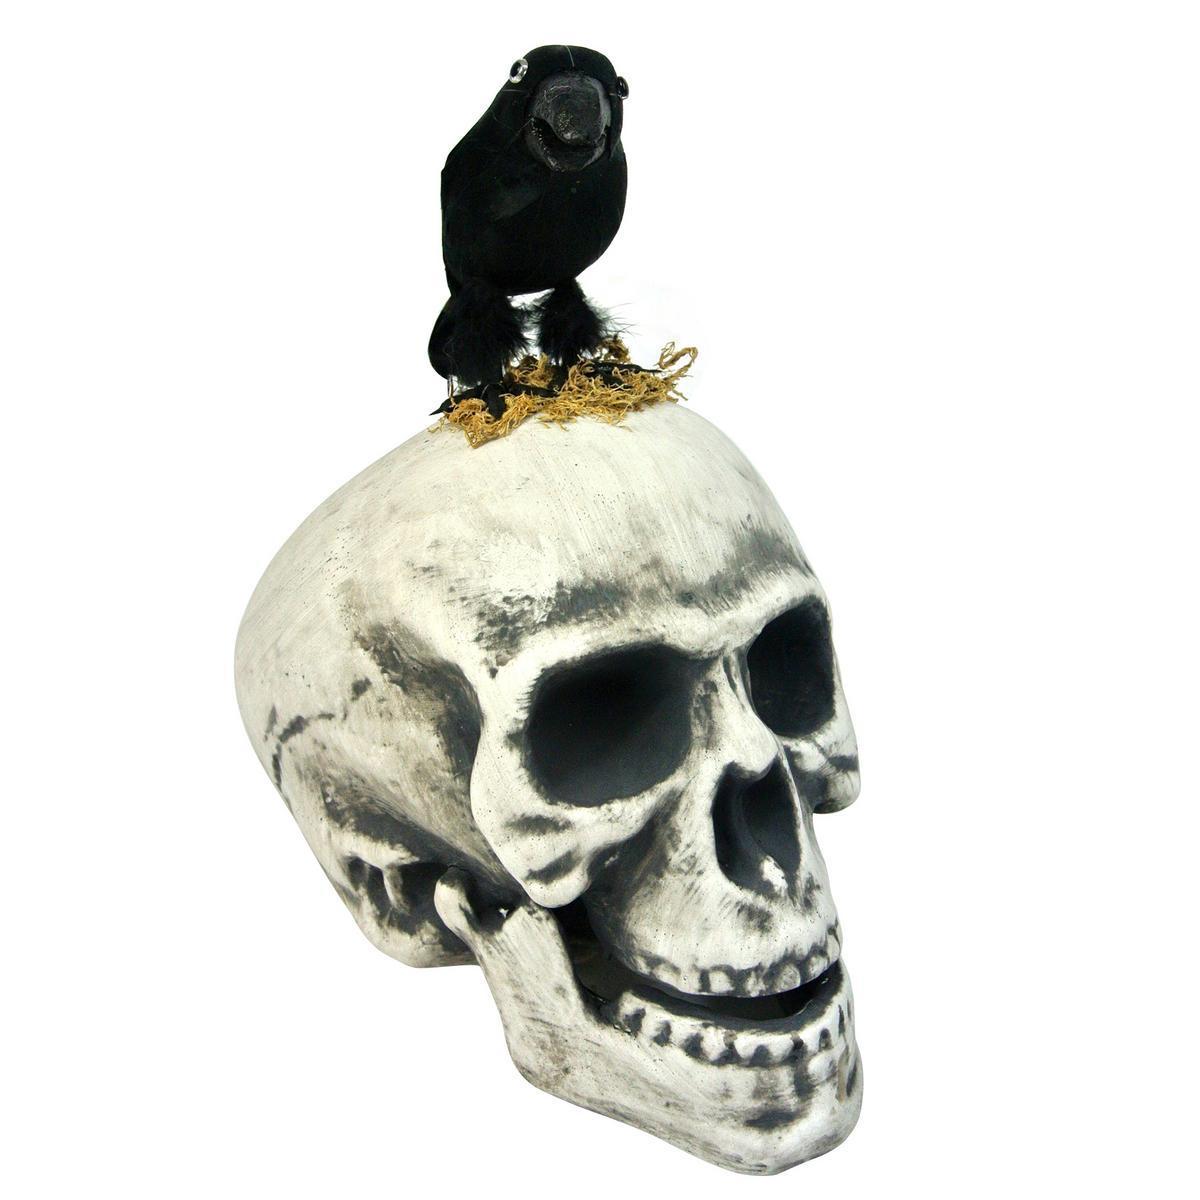 Décoration tête de mort avec corbeau - Polystyrène - 15 x H 25 cm - Blanc et noir